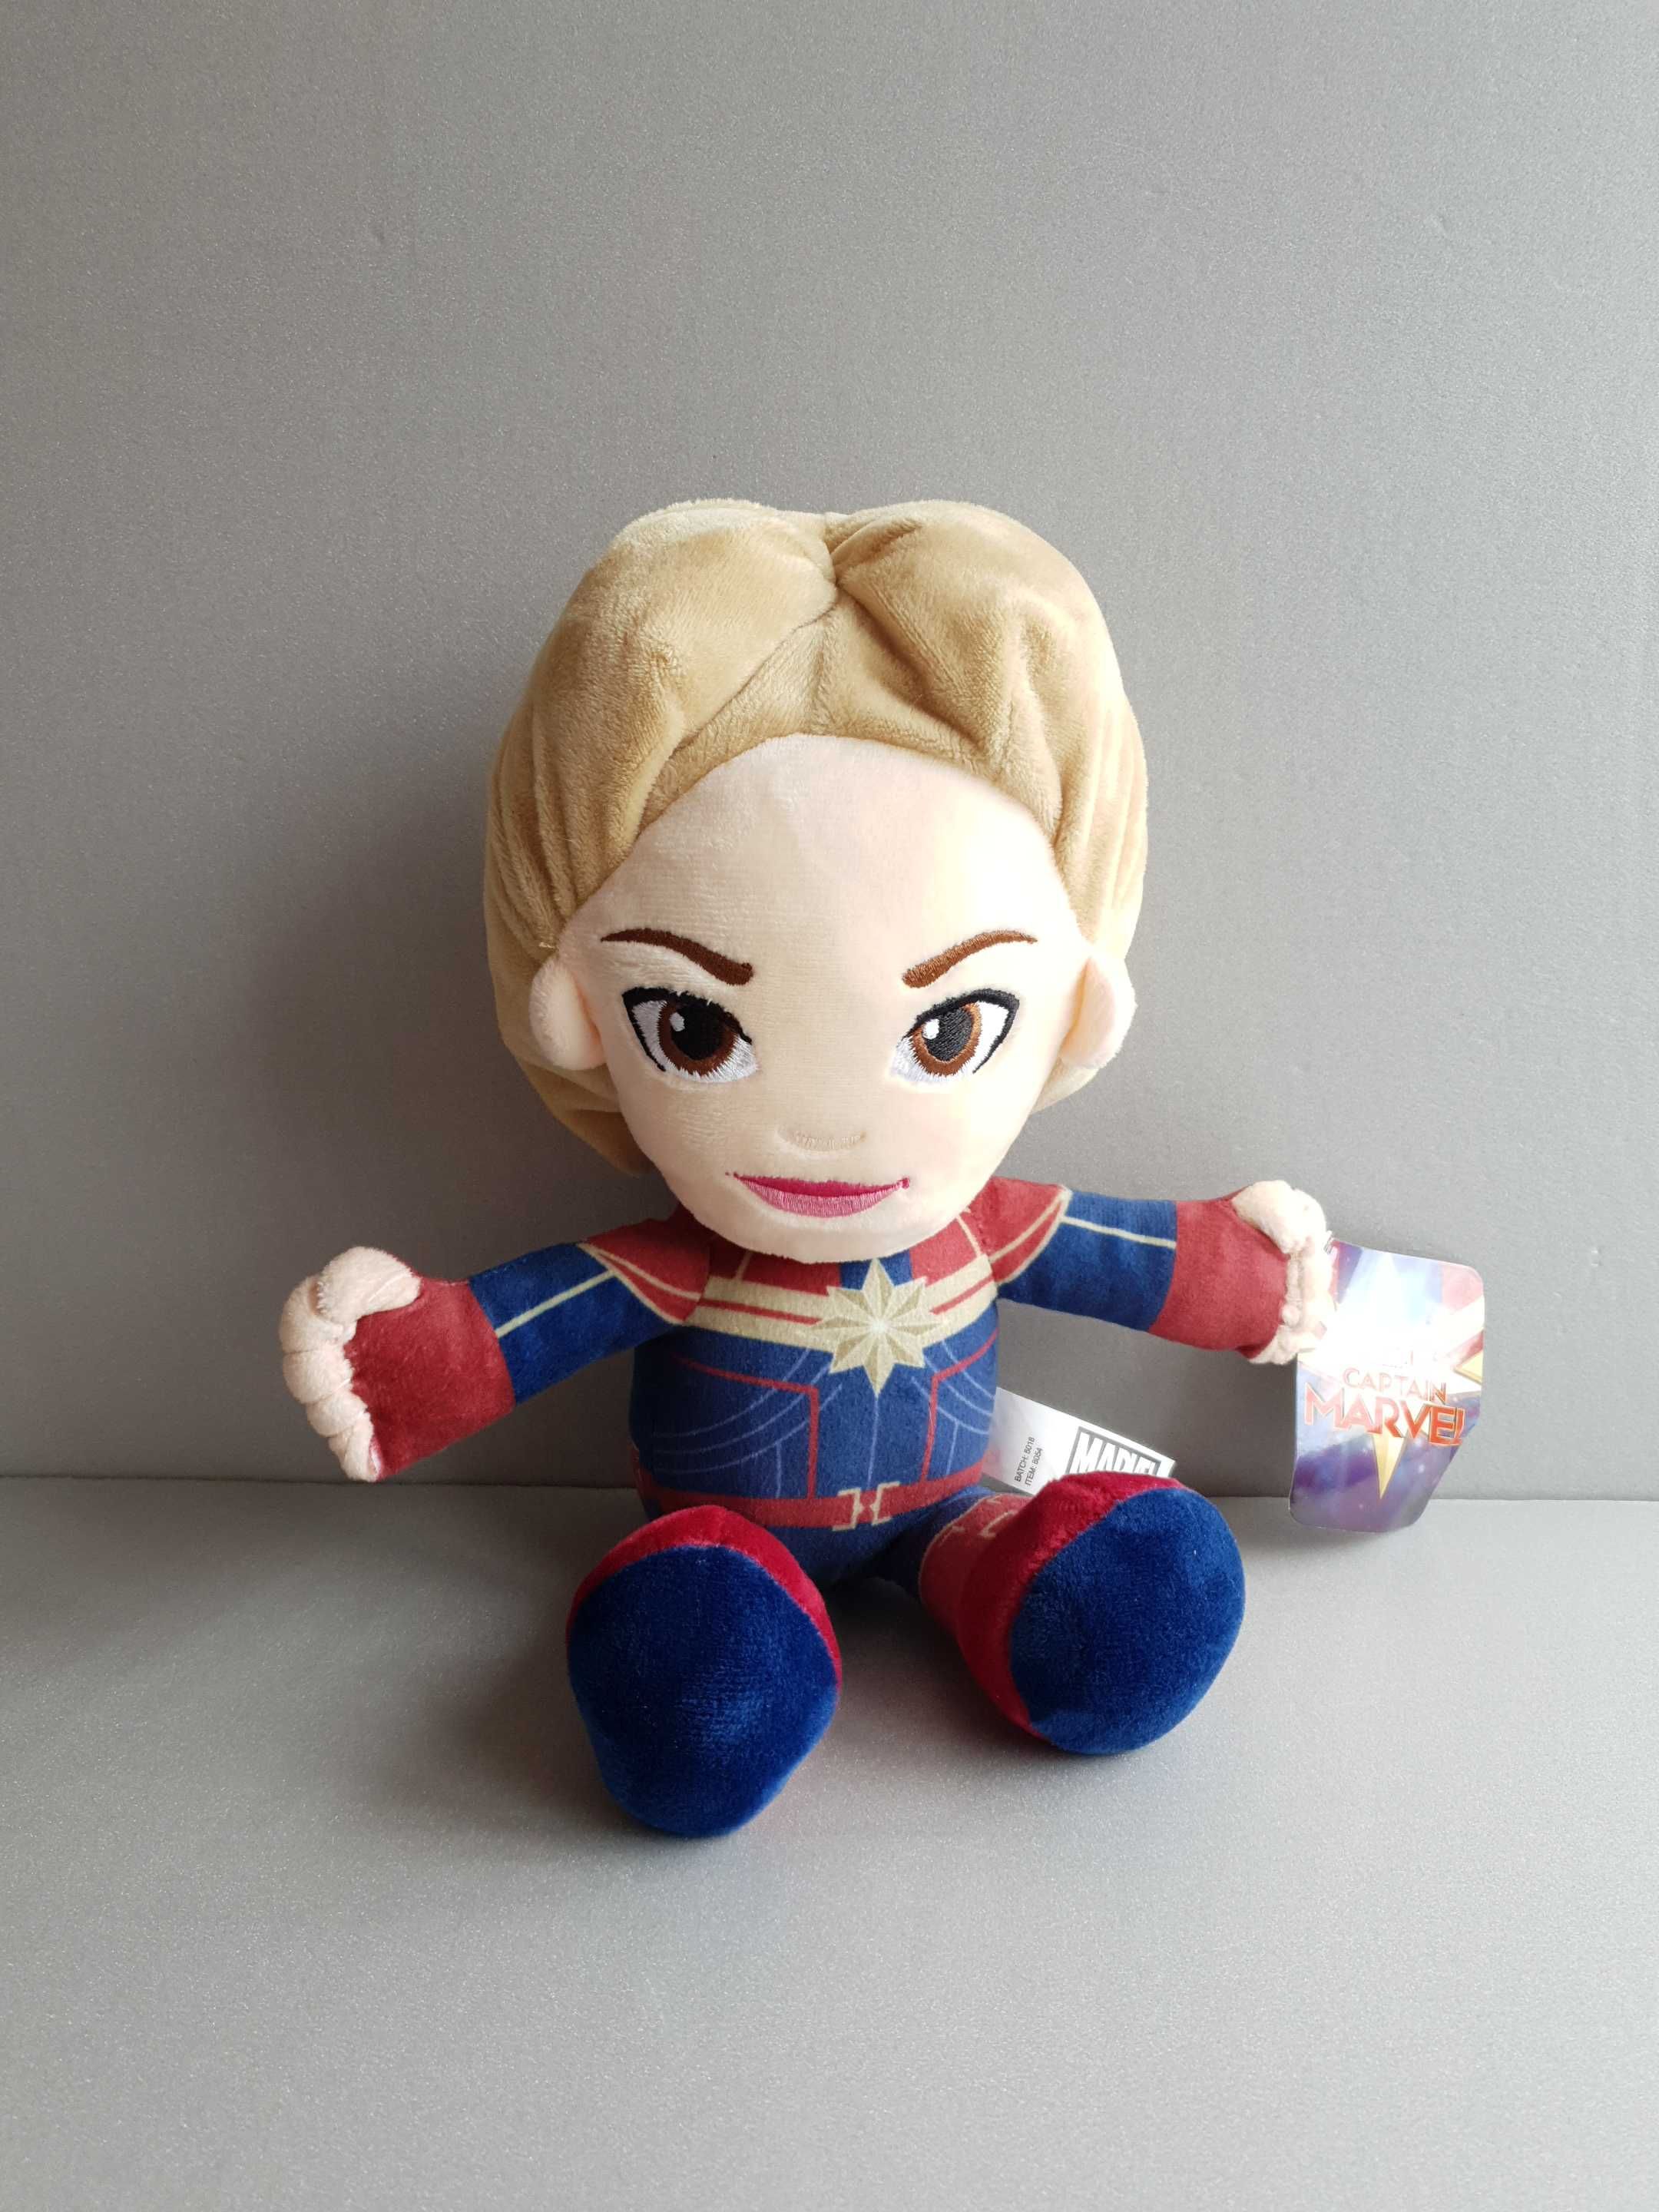 Мягкая плюшевая игрушка Marvel Avengers Captain Marvel